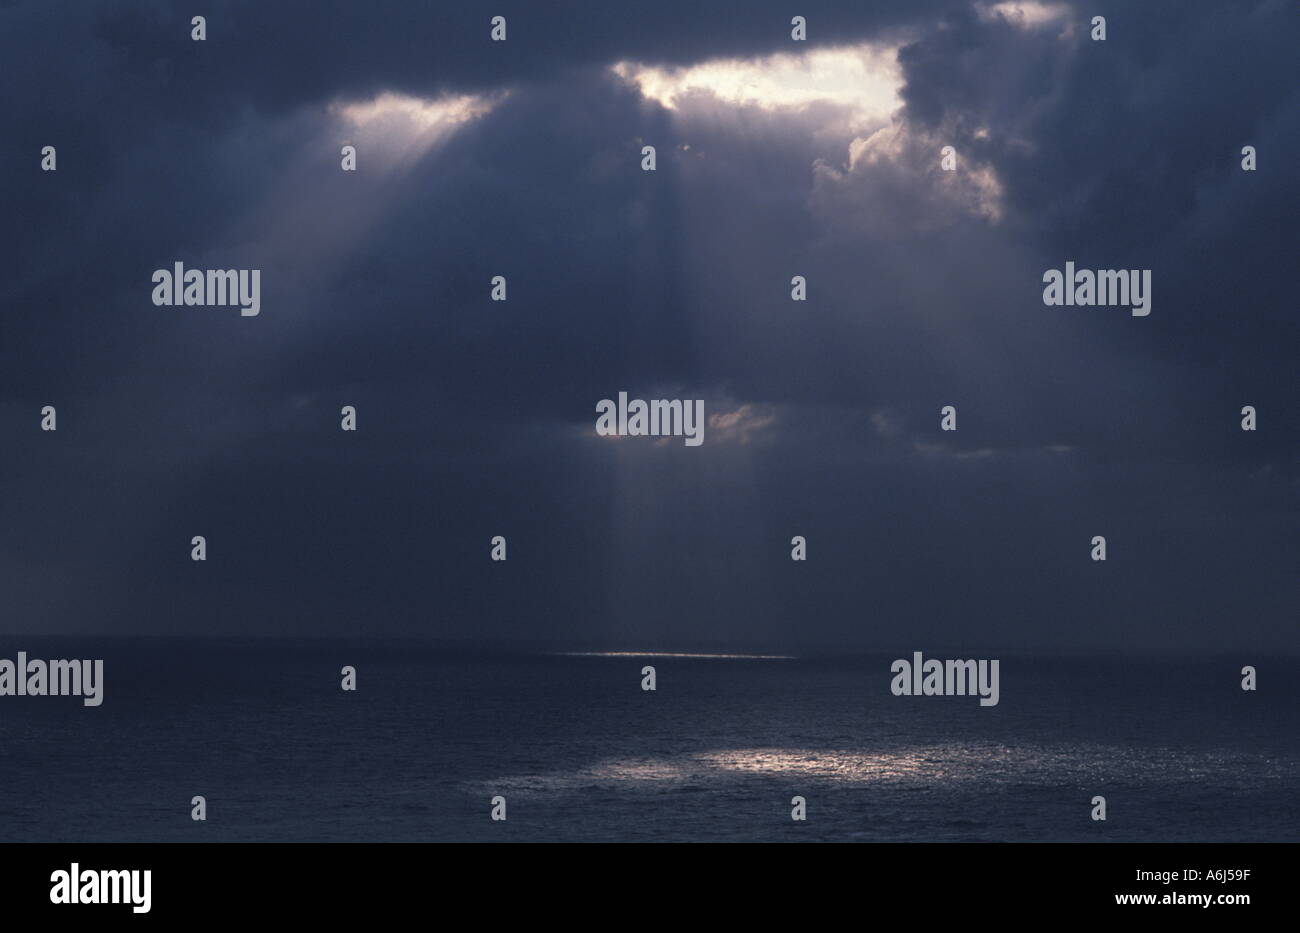 La luz brilla a través de nubes sobre el océano Foto de stock